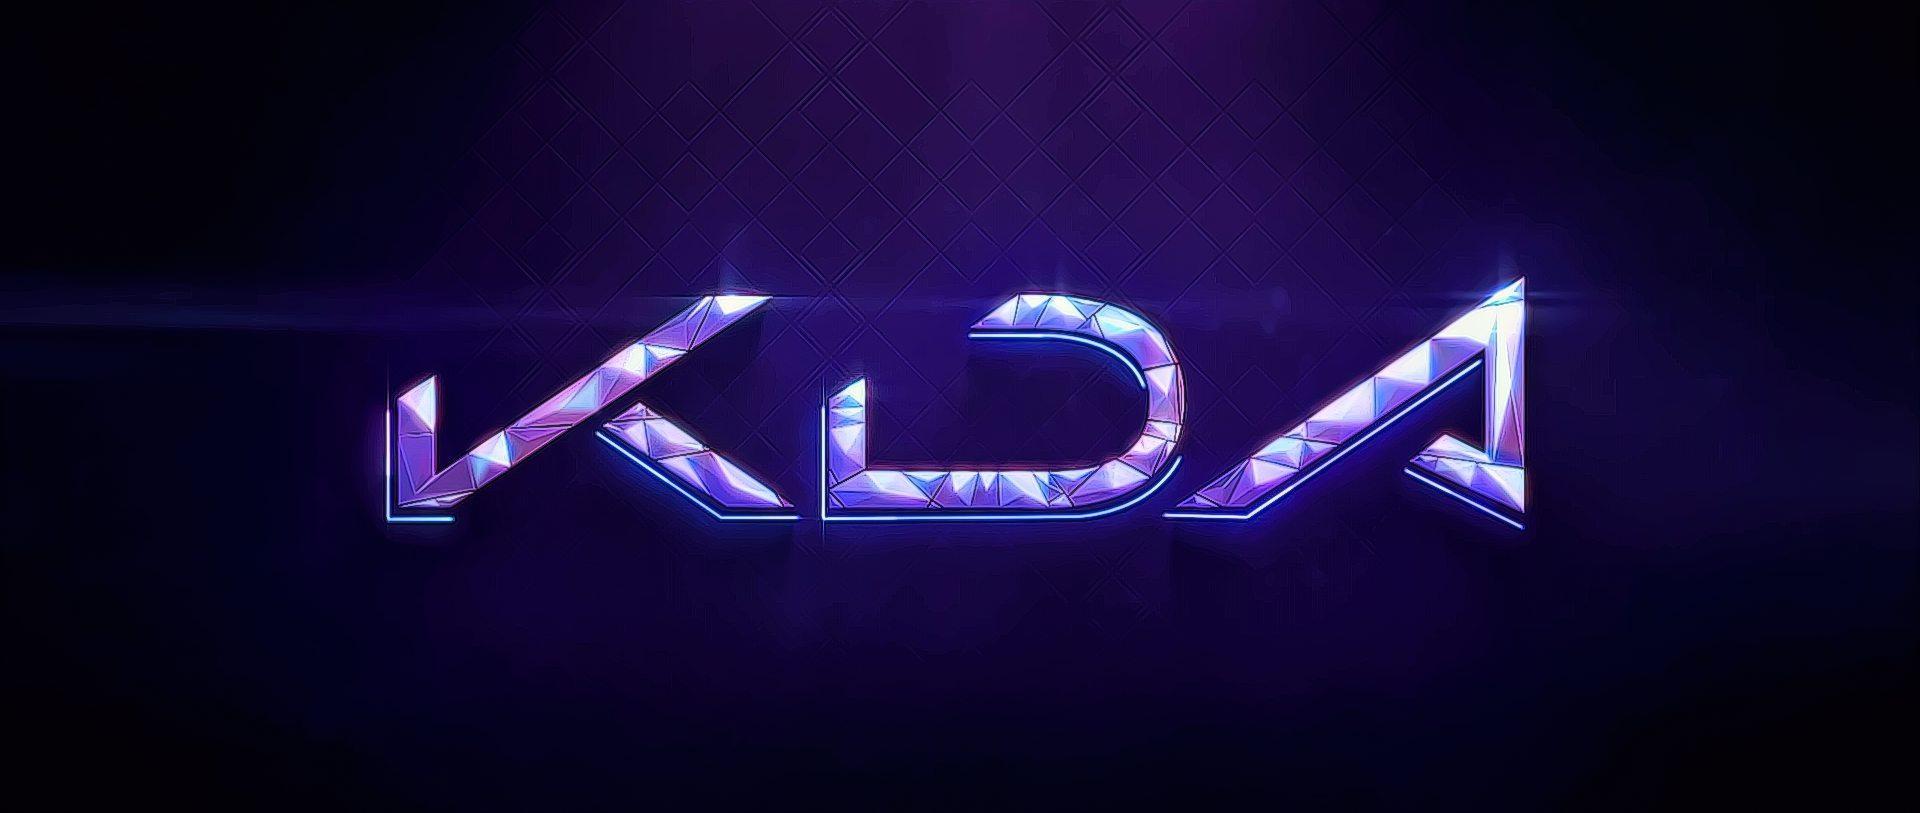 League Of Legends K/da Pop/stars - Neon Sign , HD Wallpaper & Backgrounds